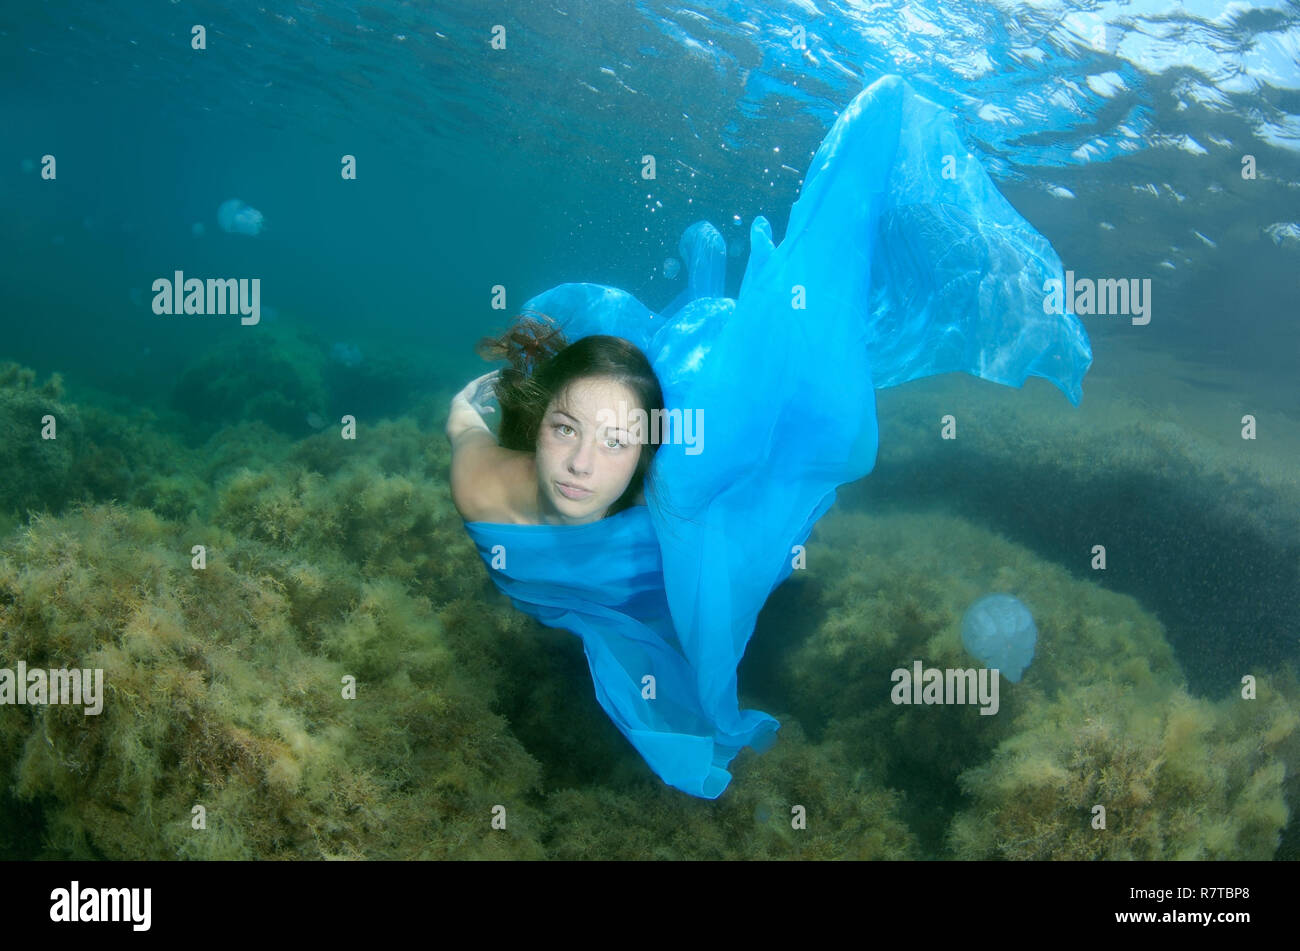 Woman presenting underwater fashion, Black Sea, Crimea, Ukraine Stock Photo